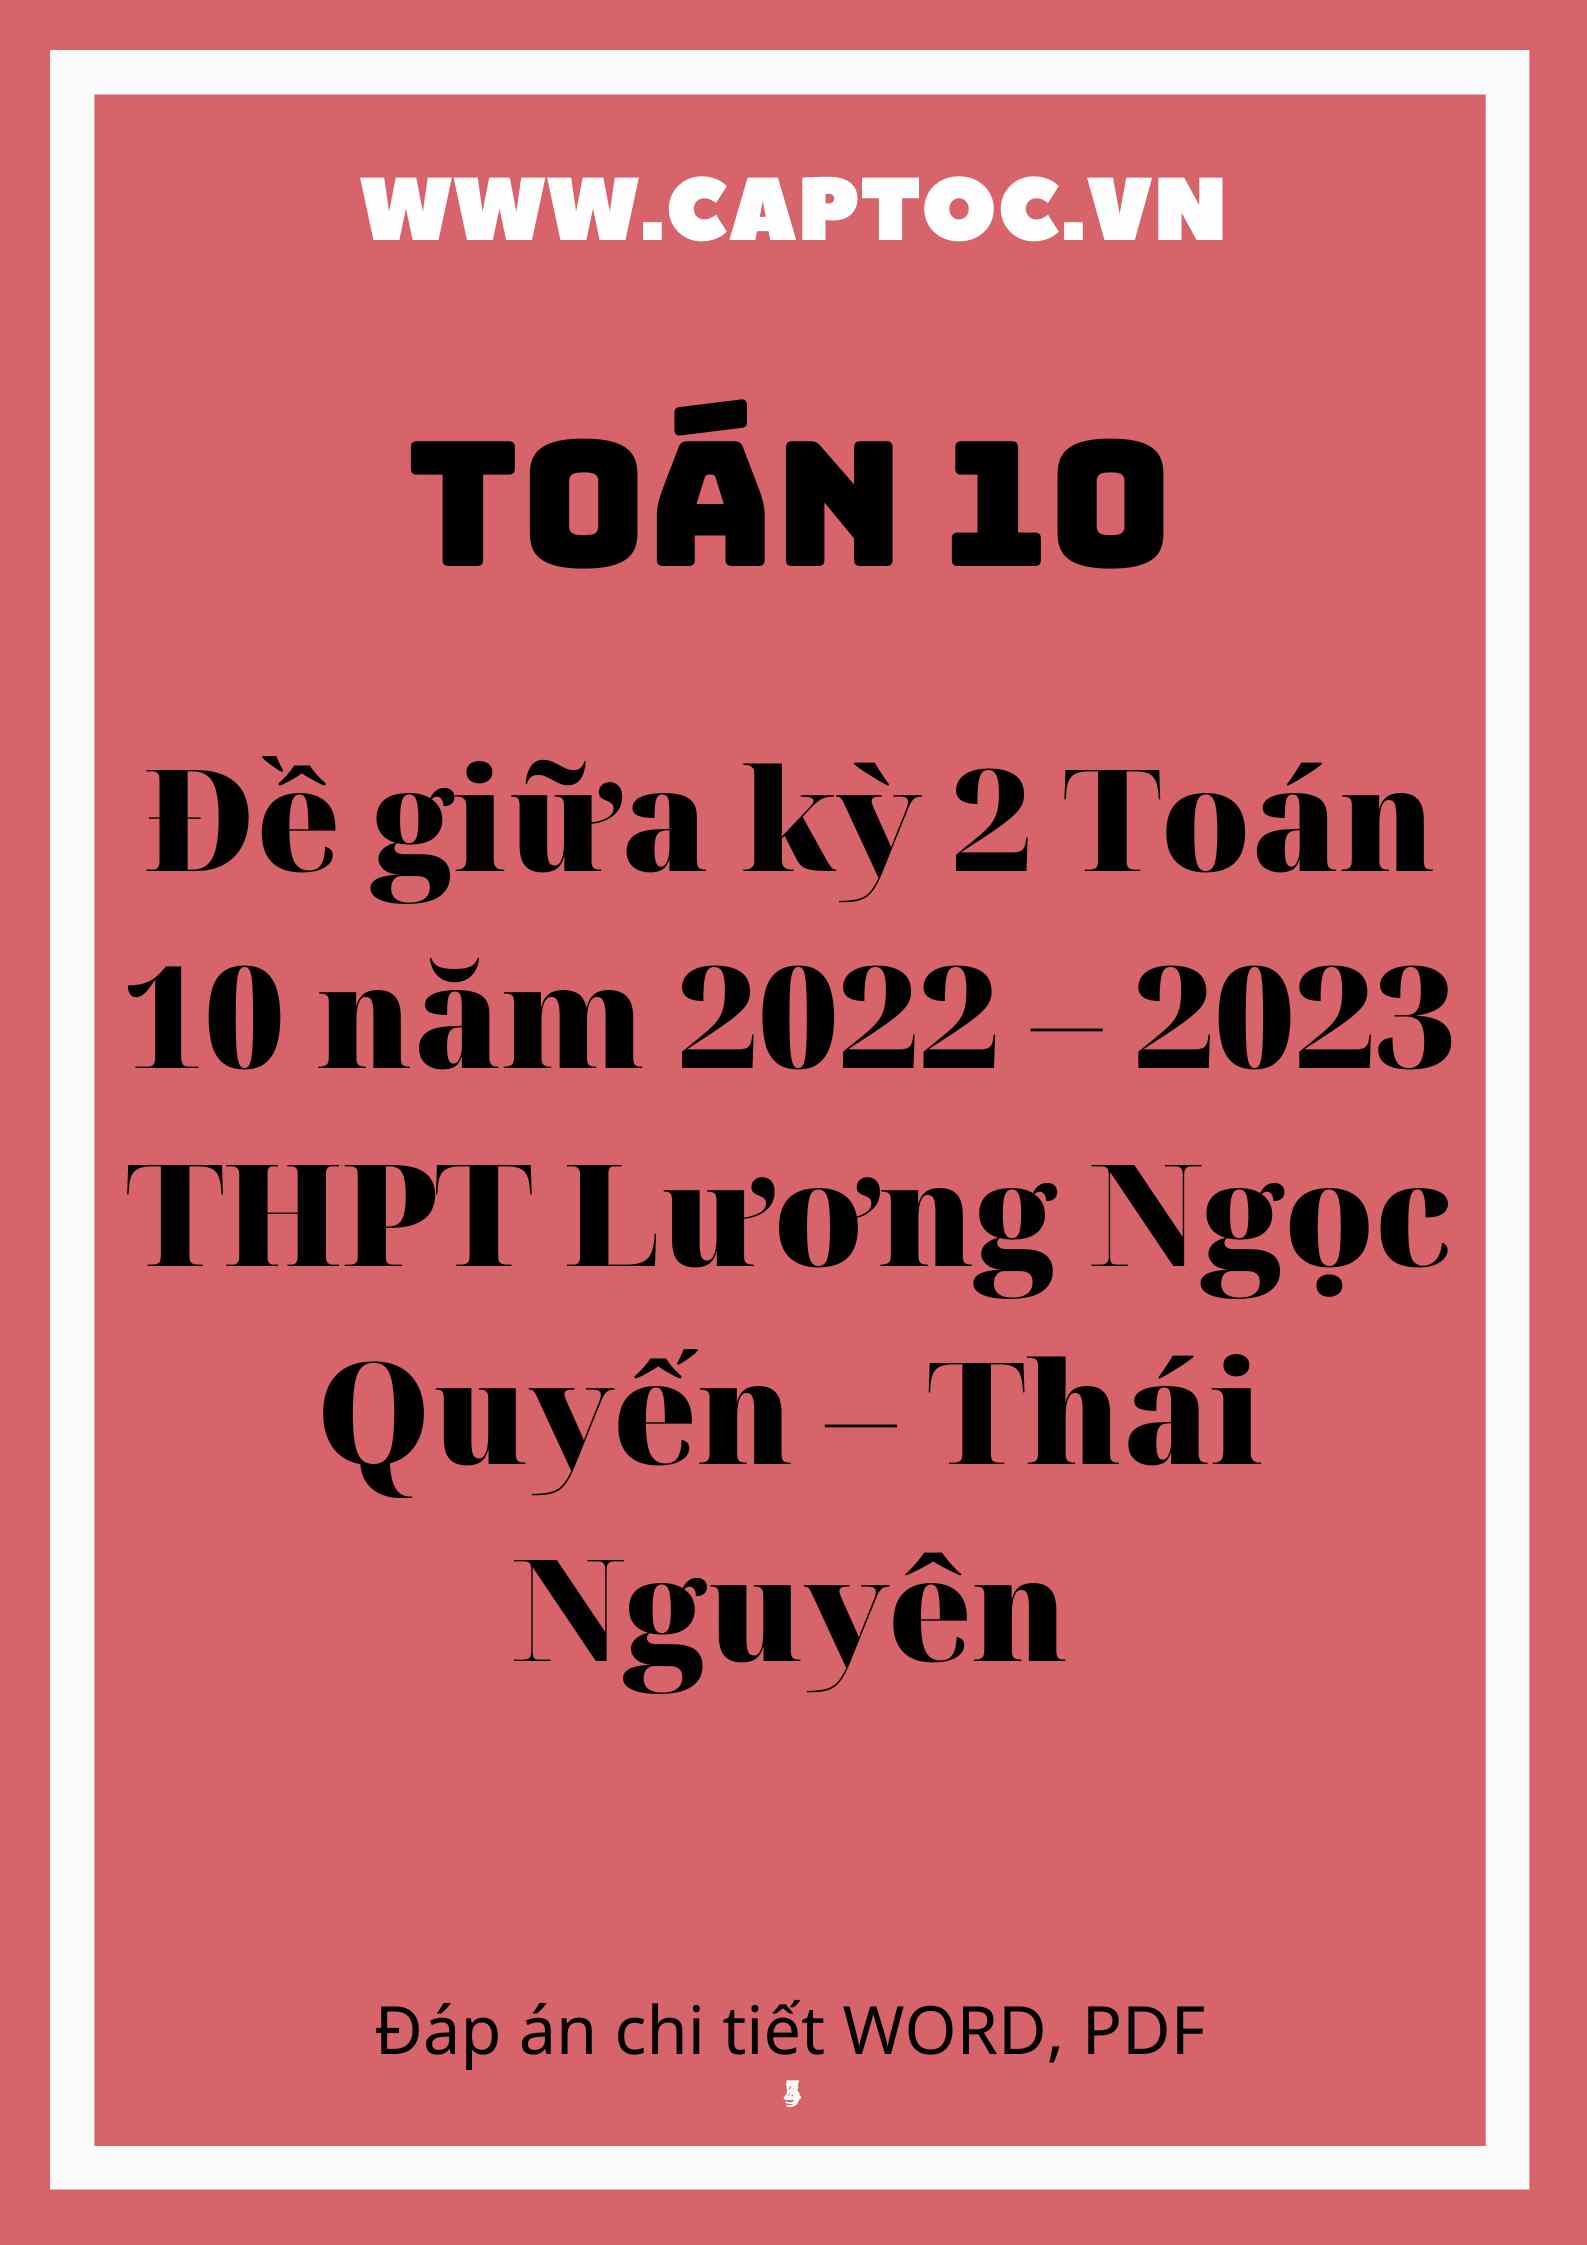 Đề giữa kỳ 2 Toán 10 năm 2022 – 2023 THPT Lương Ngọc Quyến – Thái Nguyên